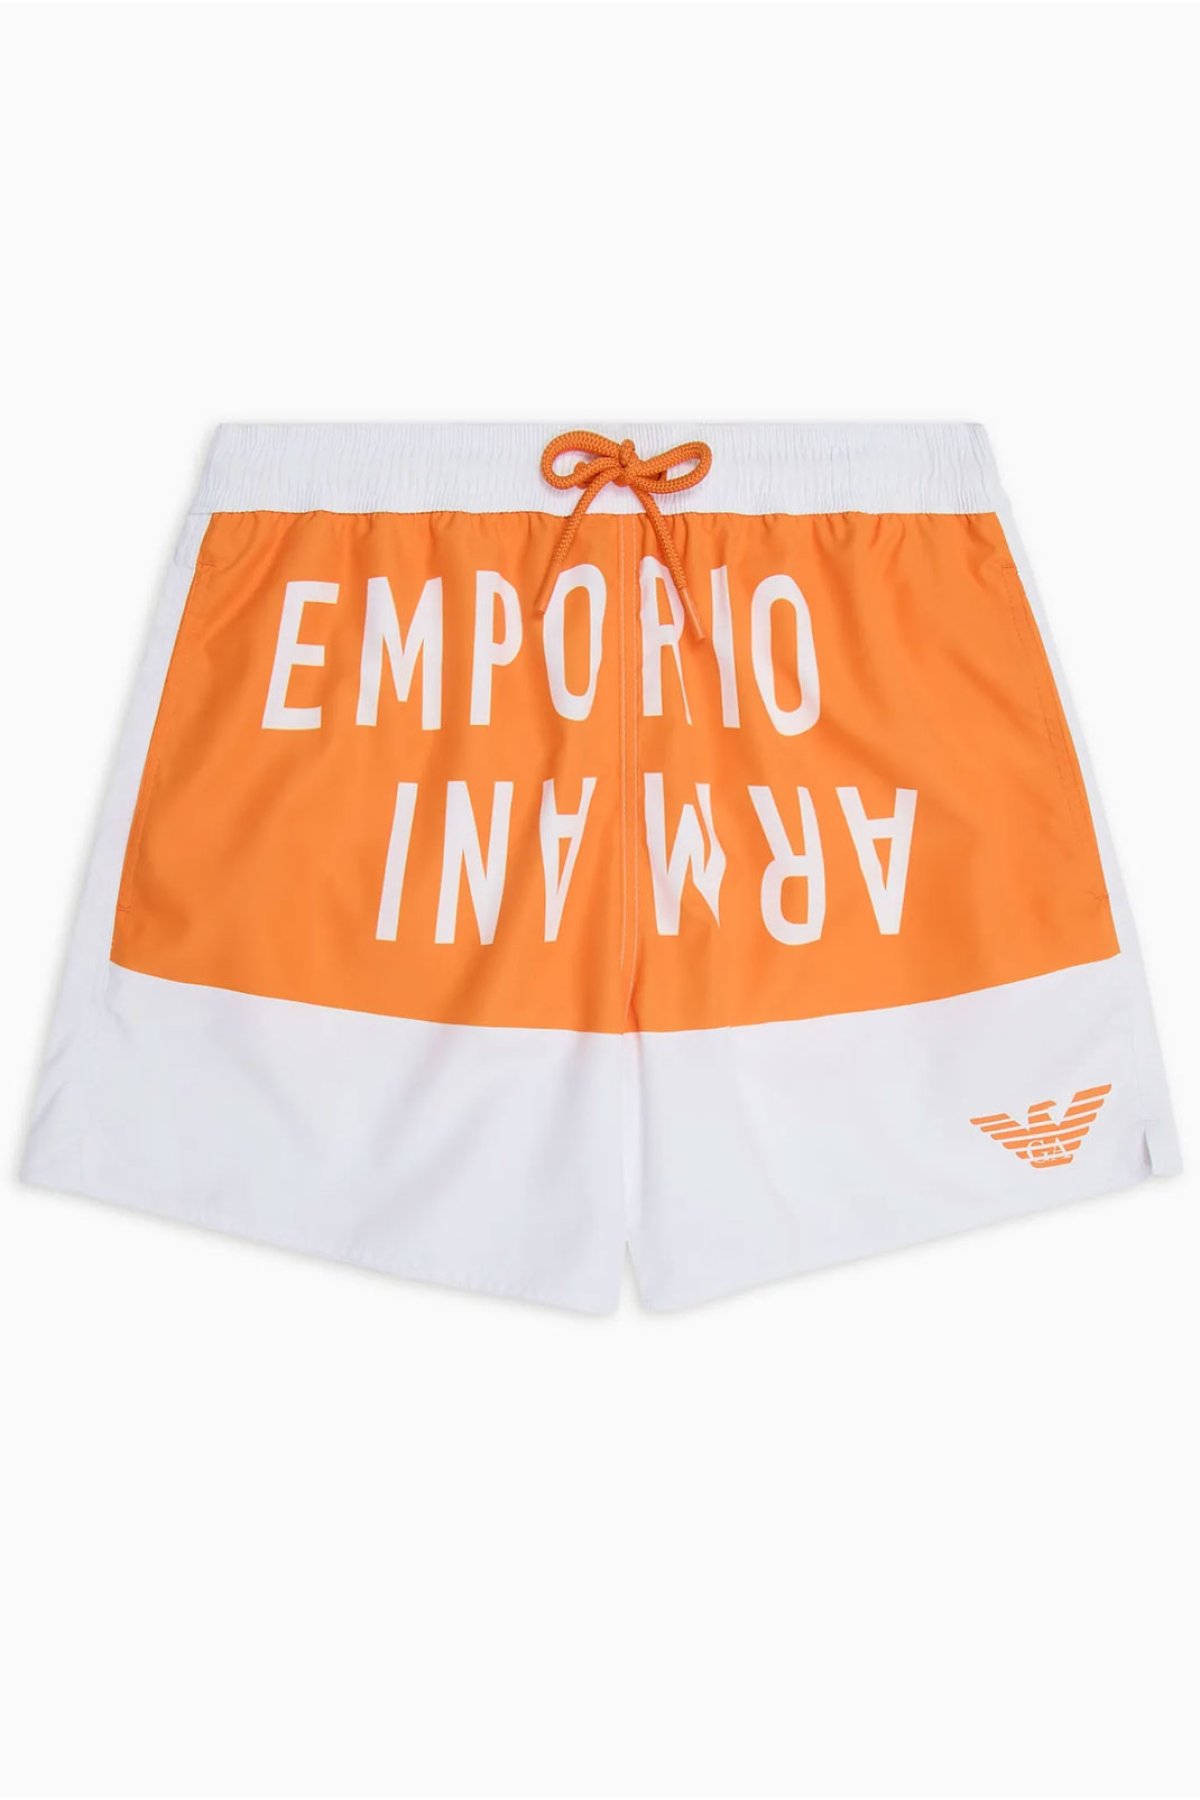 Emporio Armani 211740 4R424 šortky bílá/oranžová